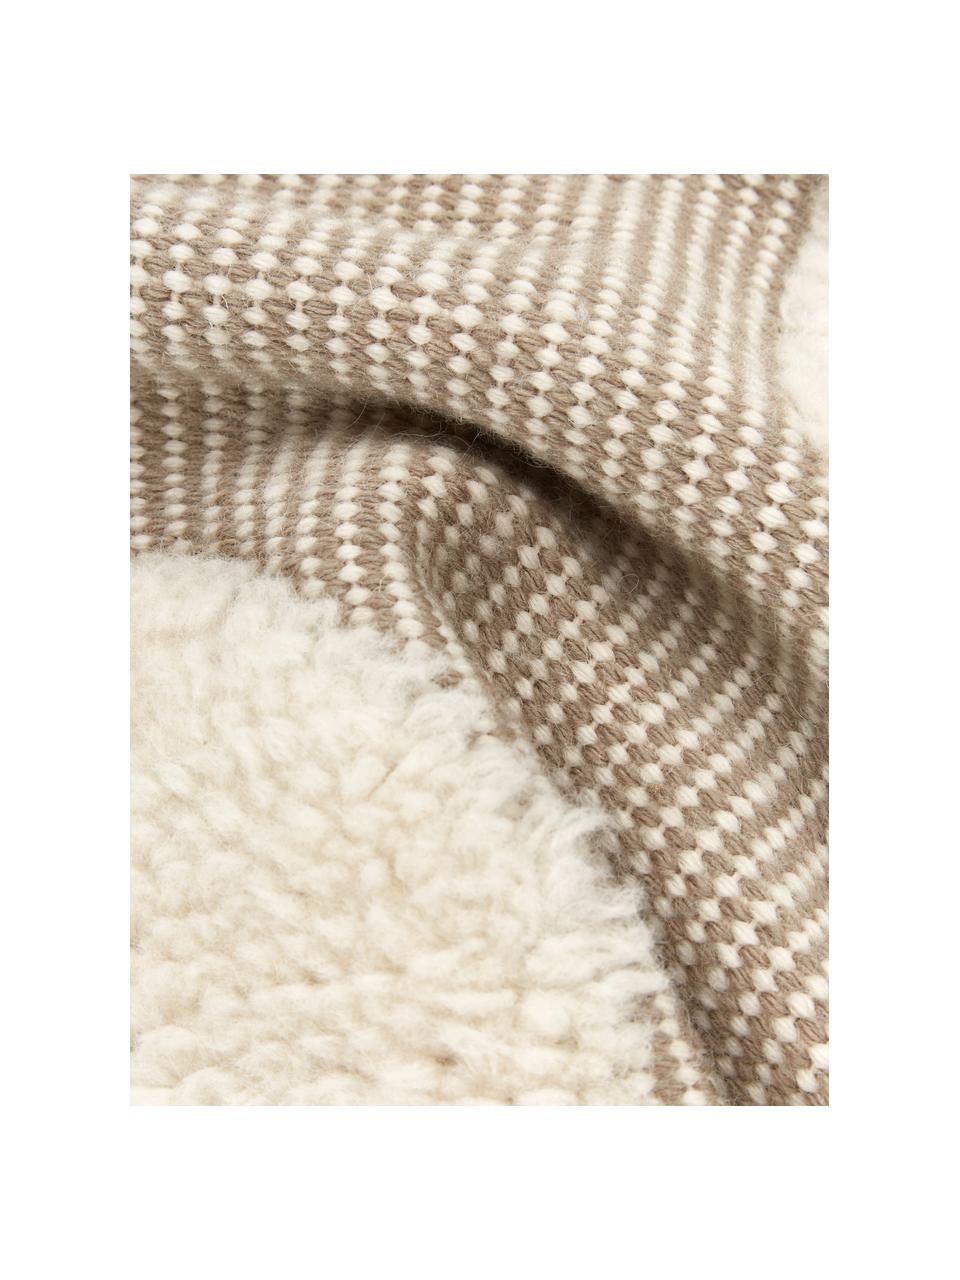 Ręcznie tkana poszewka na poduszkę Wool, Beżowy, kremowobiały, S 45 x D 45 cm